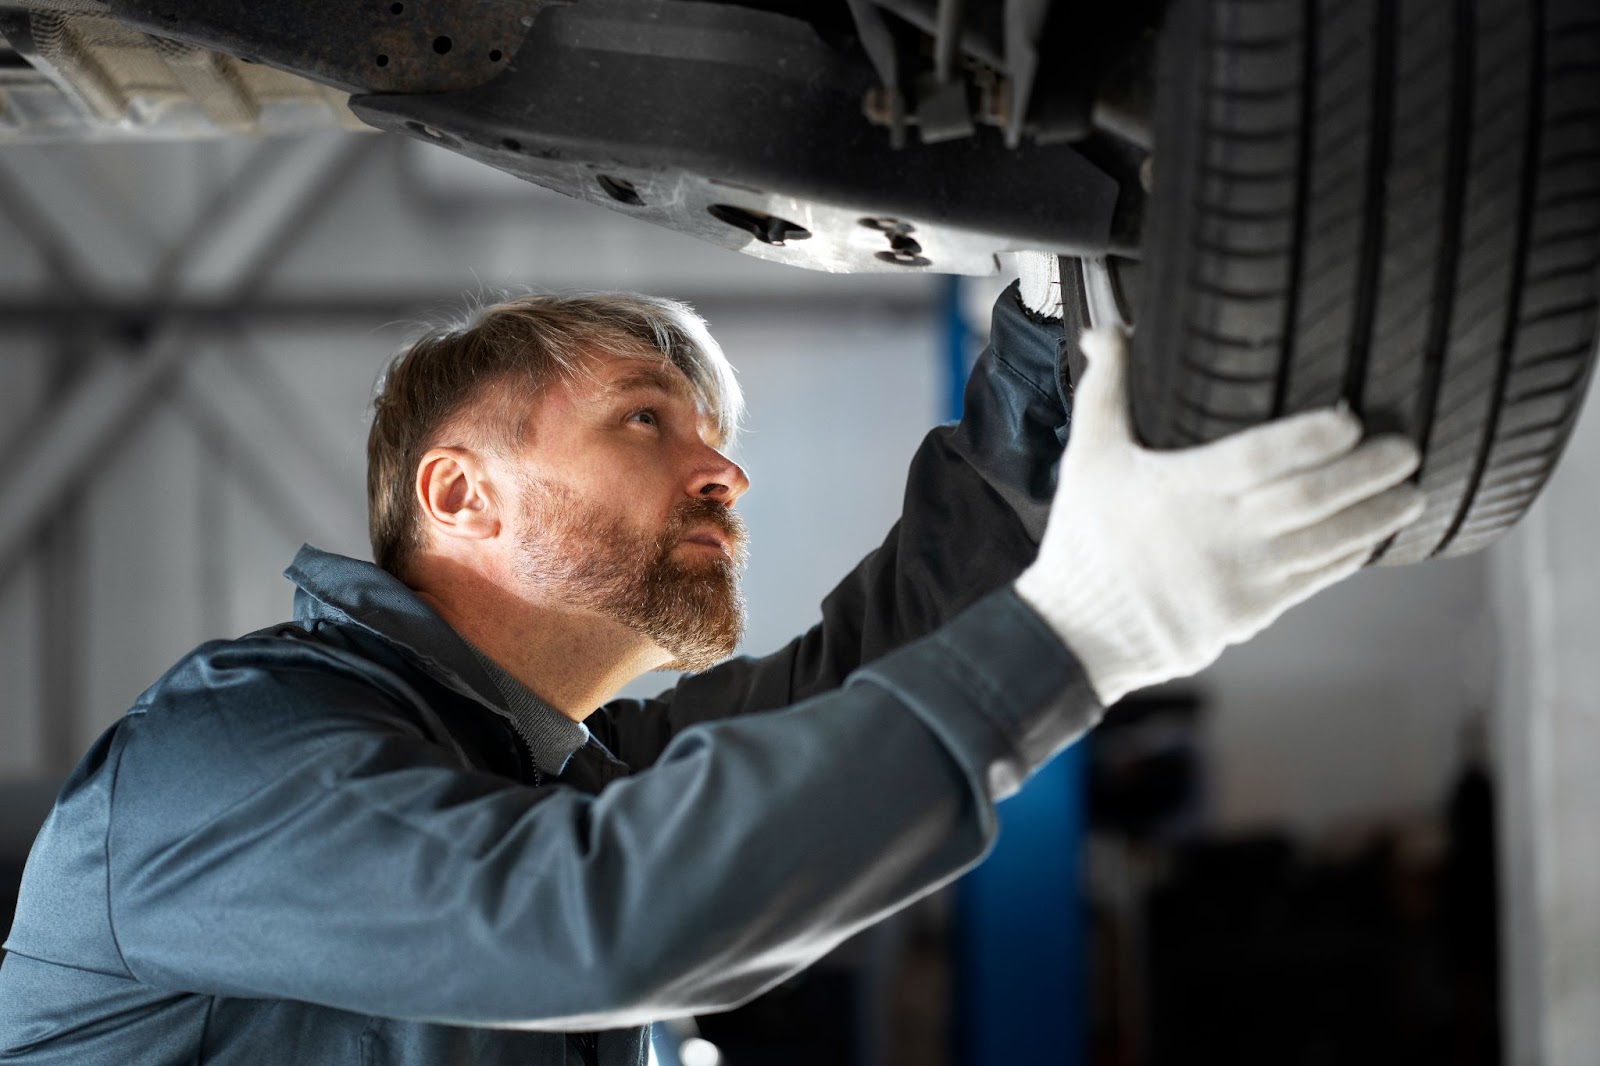 Homem mecânico examinando atentamente um dos componentes do sistema de suspensão de um veículo, o pneu.